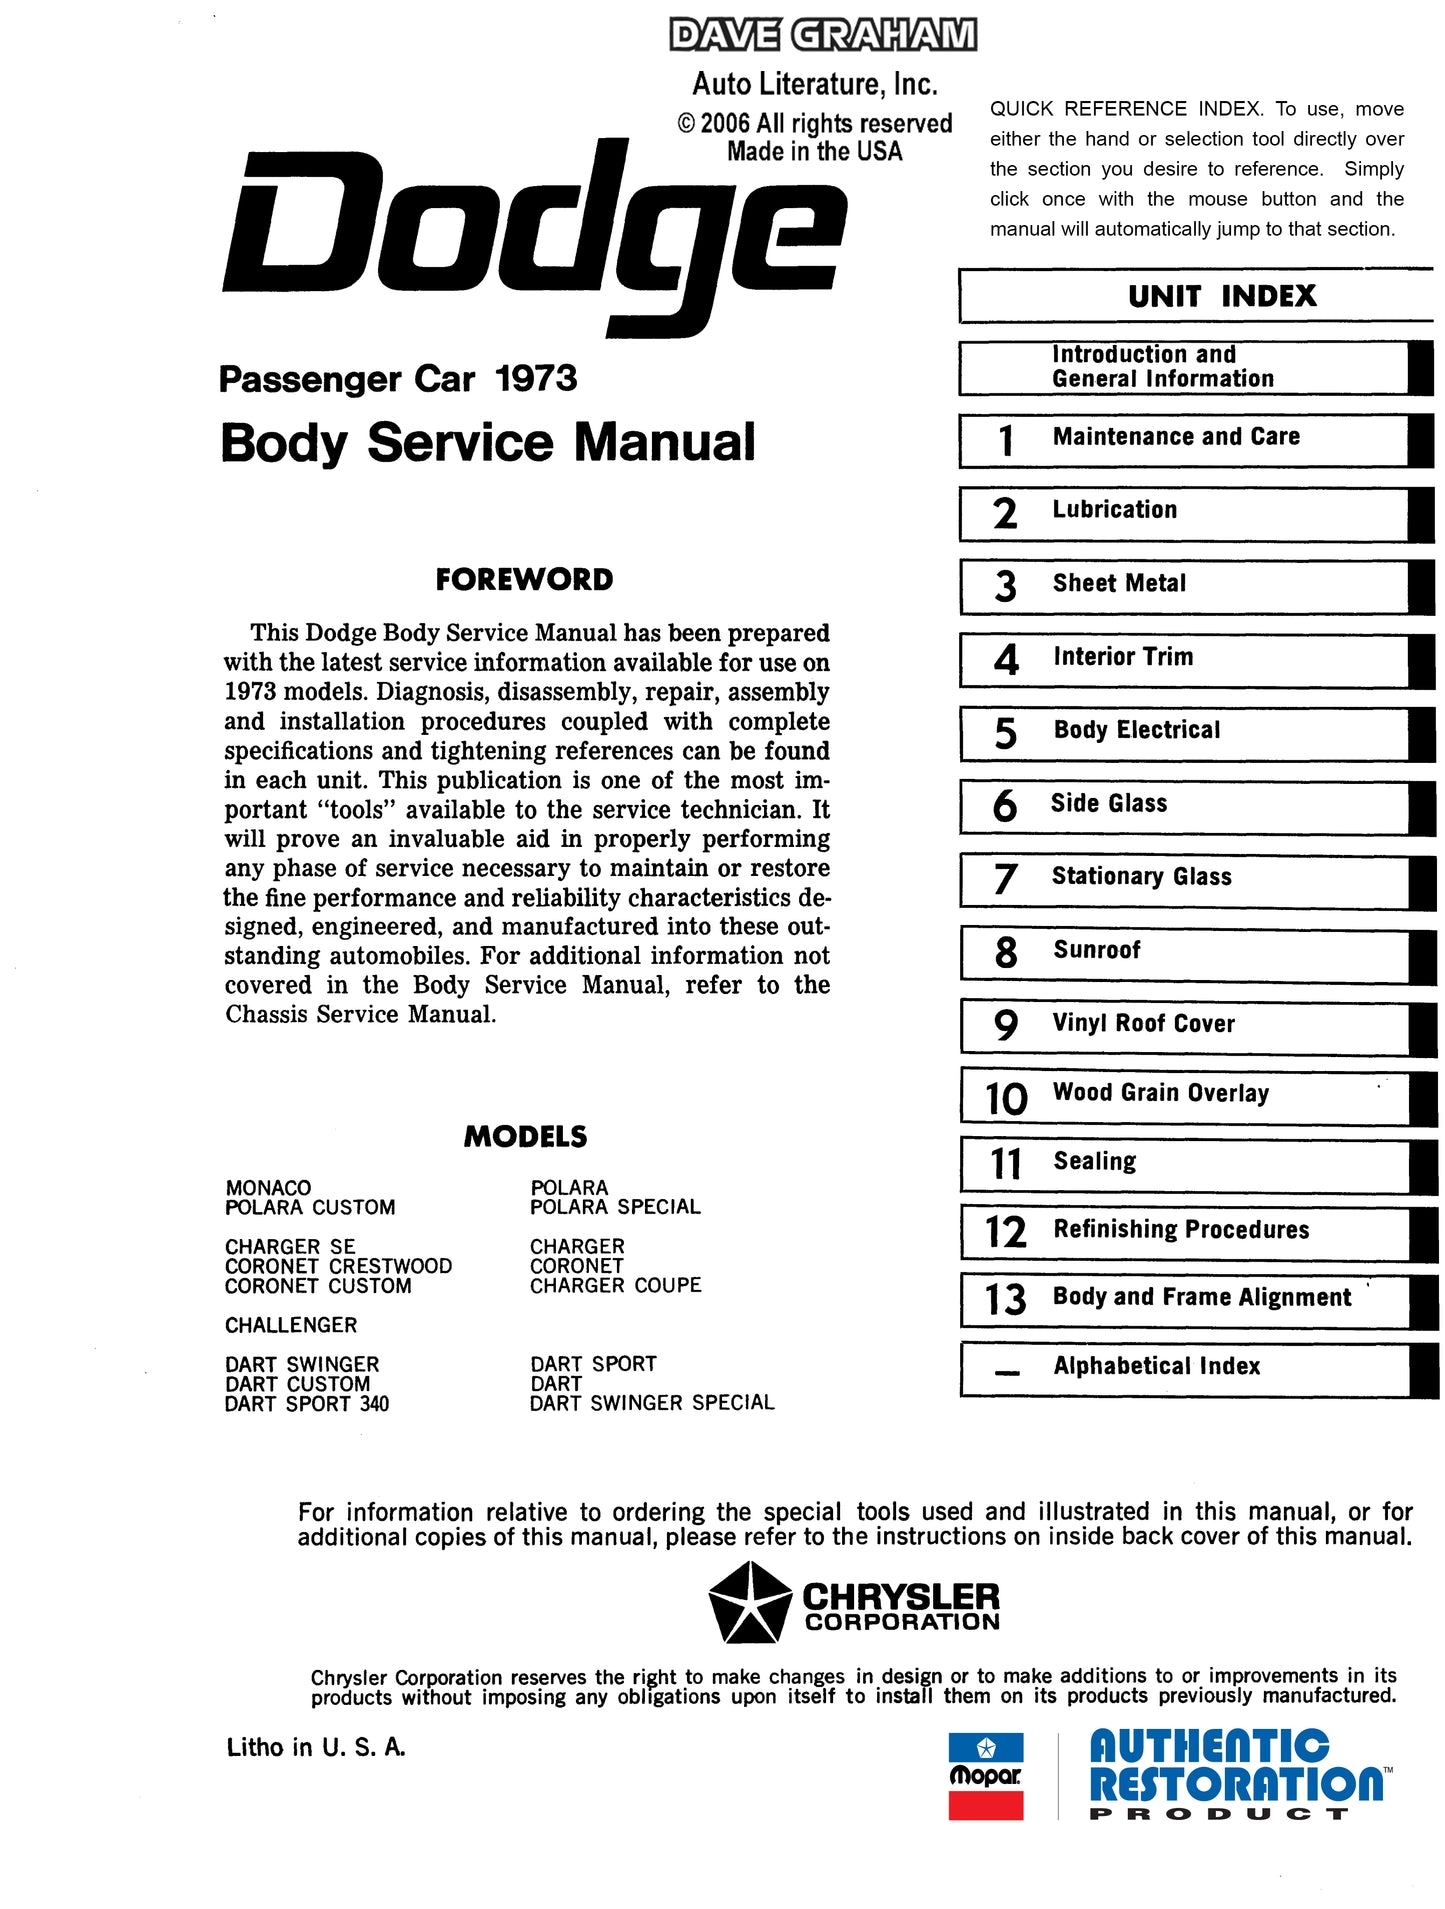 1973 Dodge Service Shop Manuals - All Models